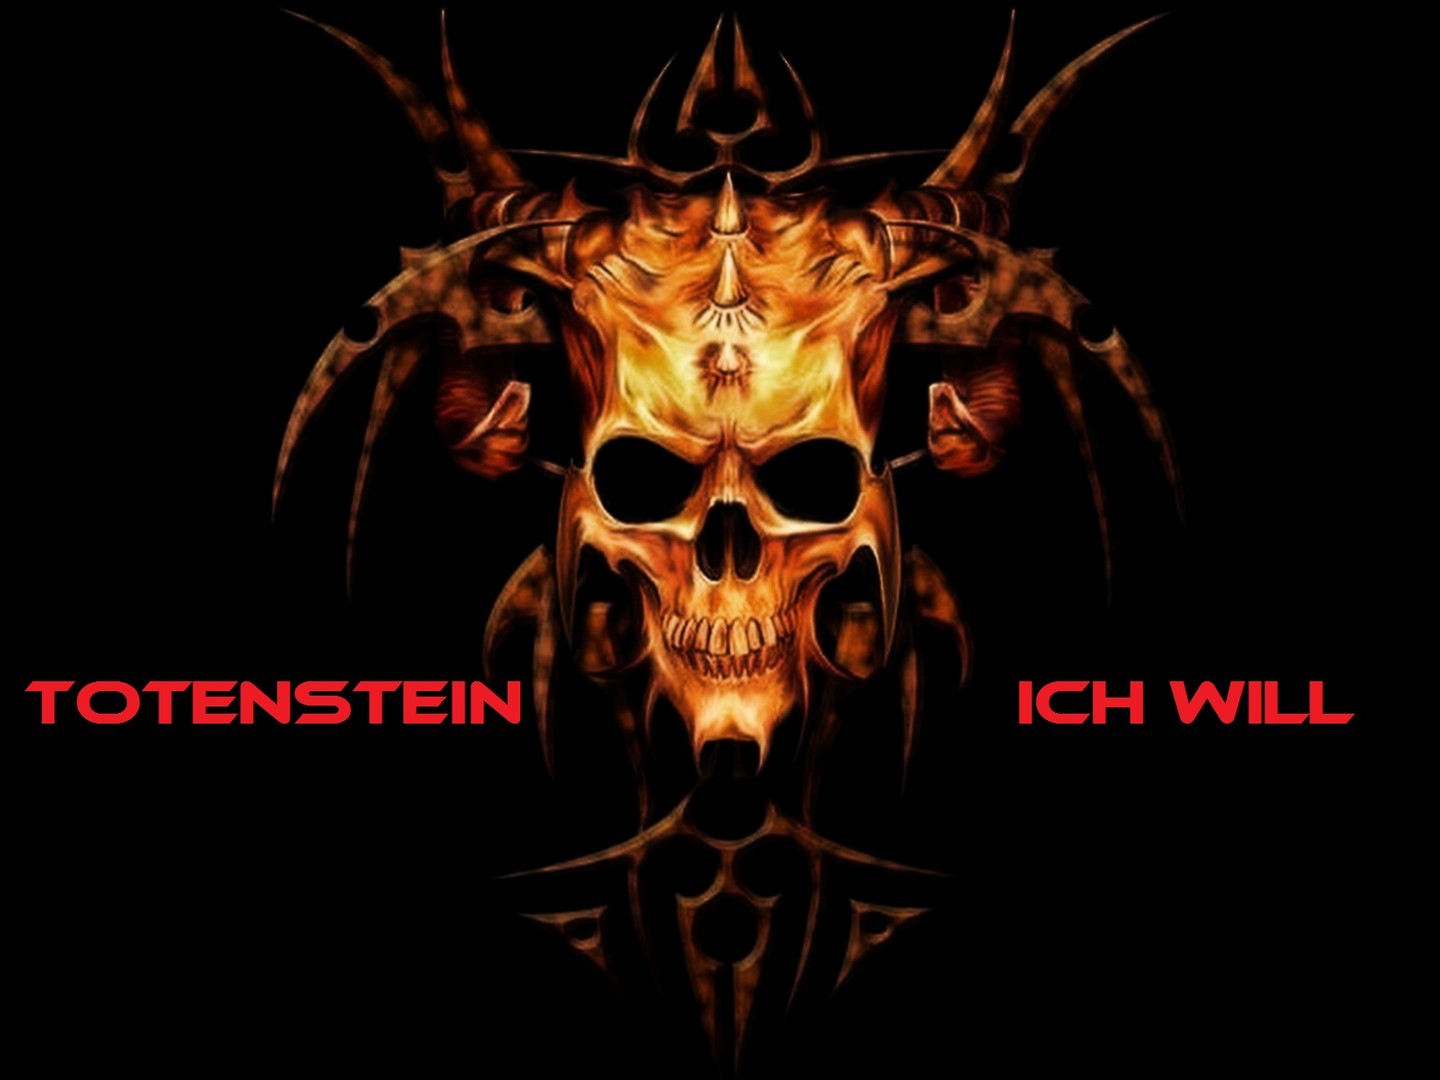 ToTenstein-2011 Germany-Ich Will